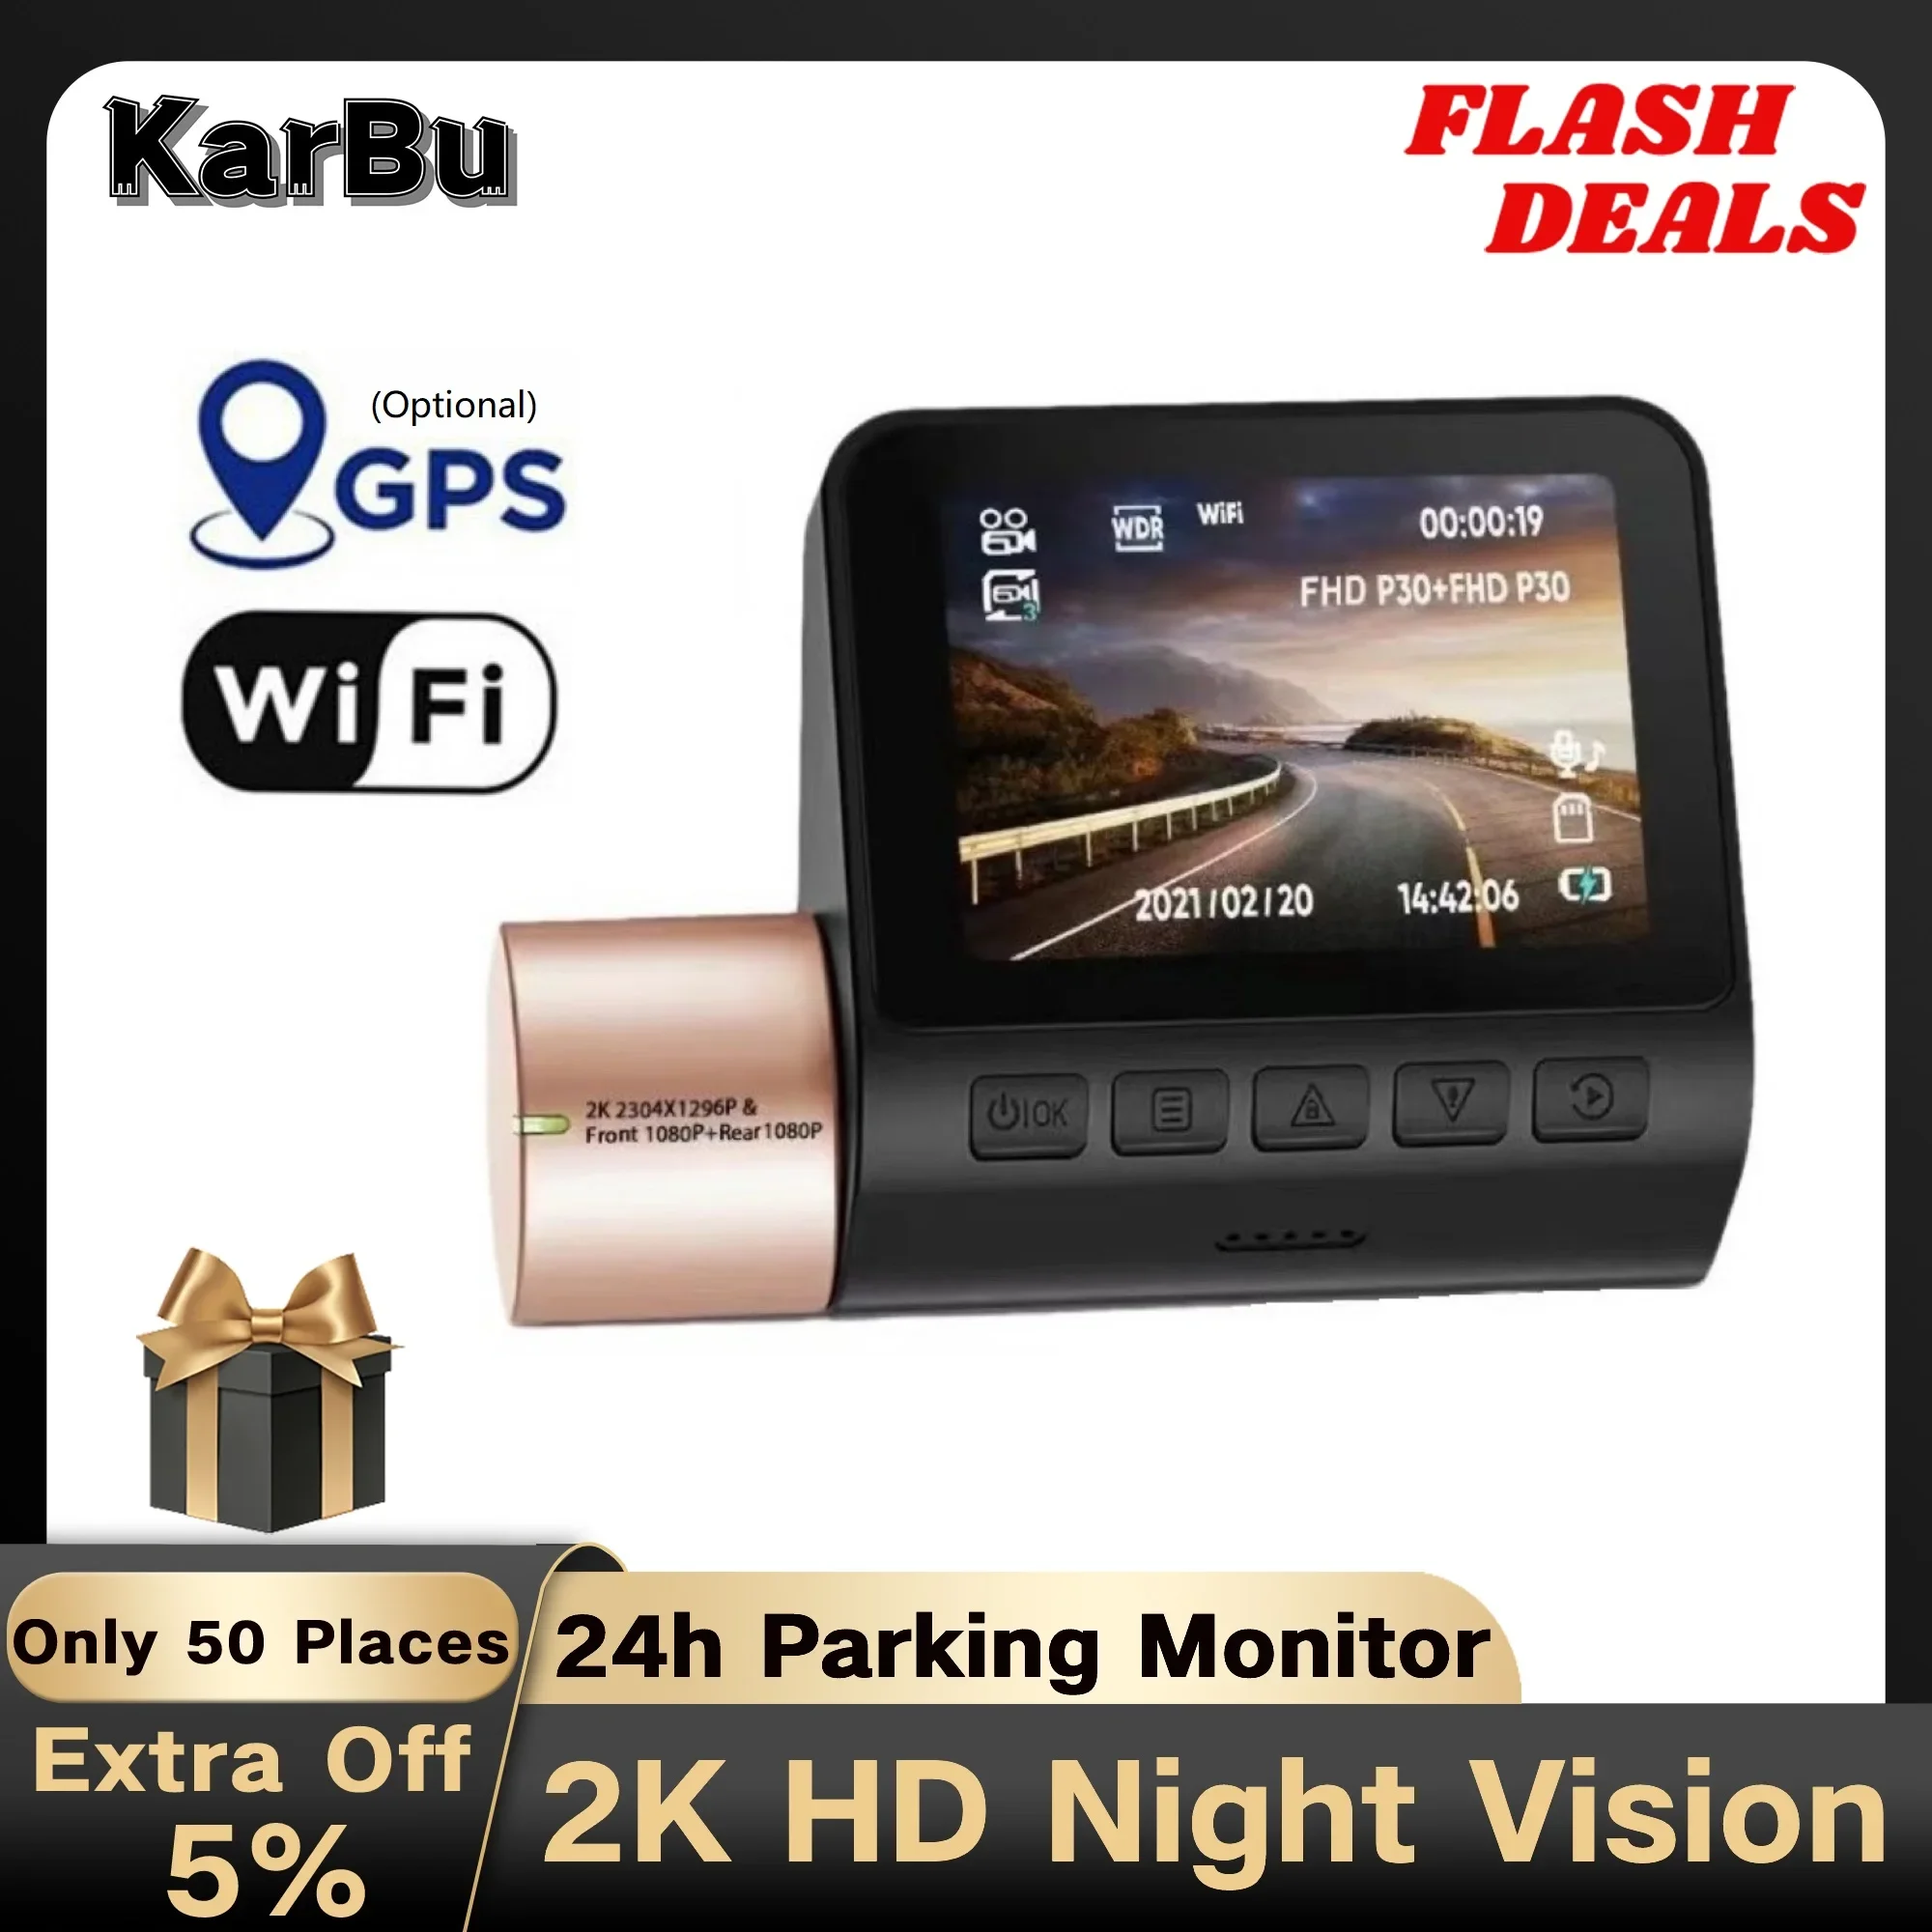 https://ae01.alicdn.com/kf/S24d65190676d4dc9a186fc772a732d24g/2K-Dash-Cam-for-Car-Camera-WIFI-GPS-Night-Vision-Dashcam-24h-Parking-Monitor-Dvr-Para.jpg